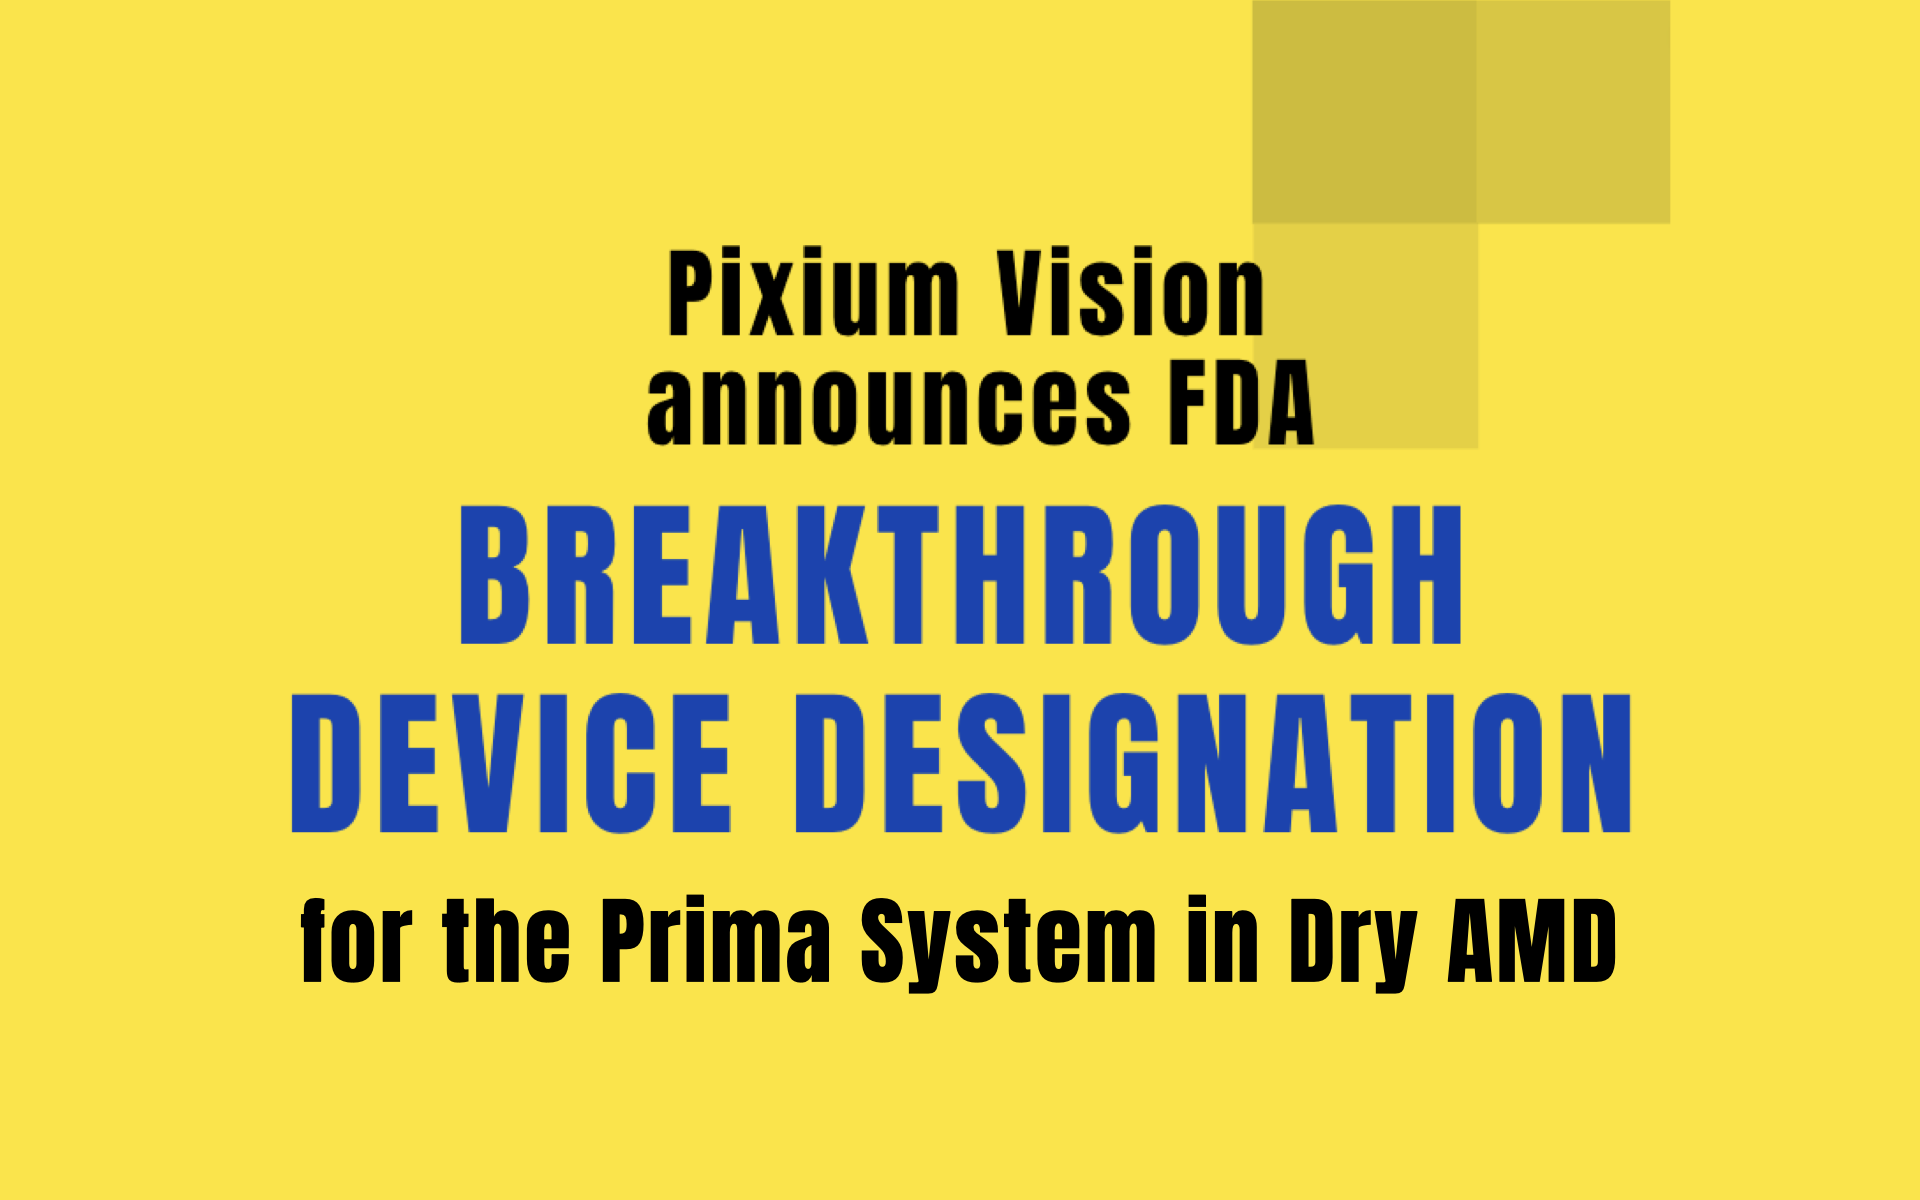 Pixium Vision announces FDA Breakthrough Device Designation for the Prima System in Dry AMD